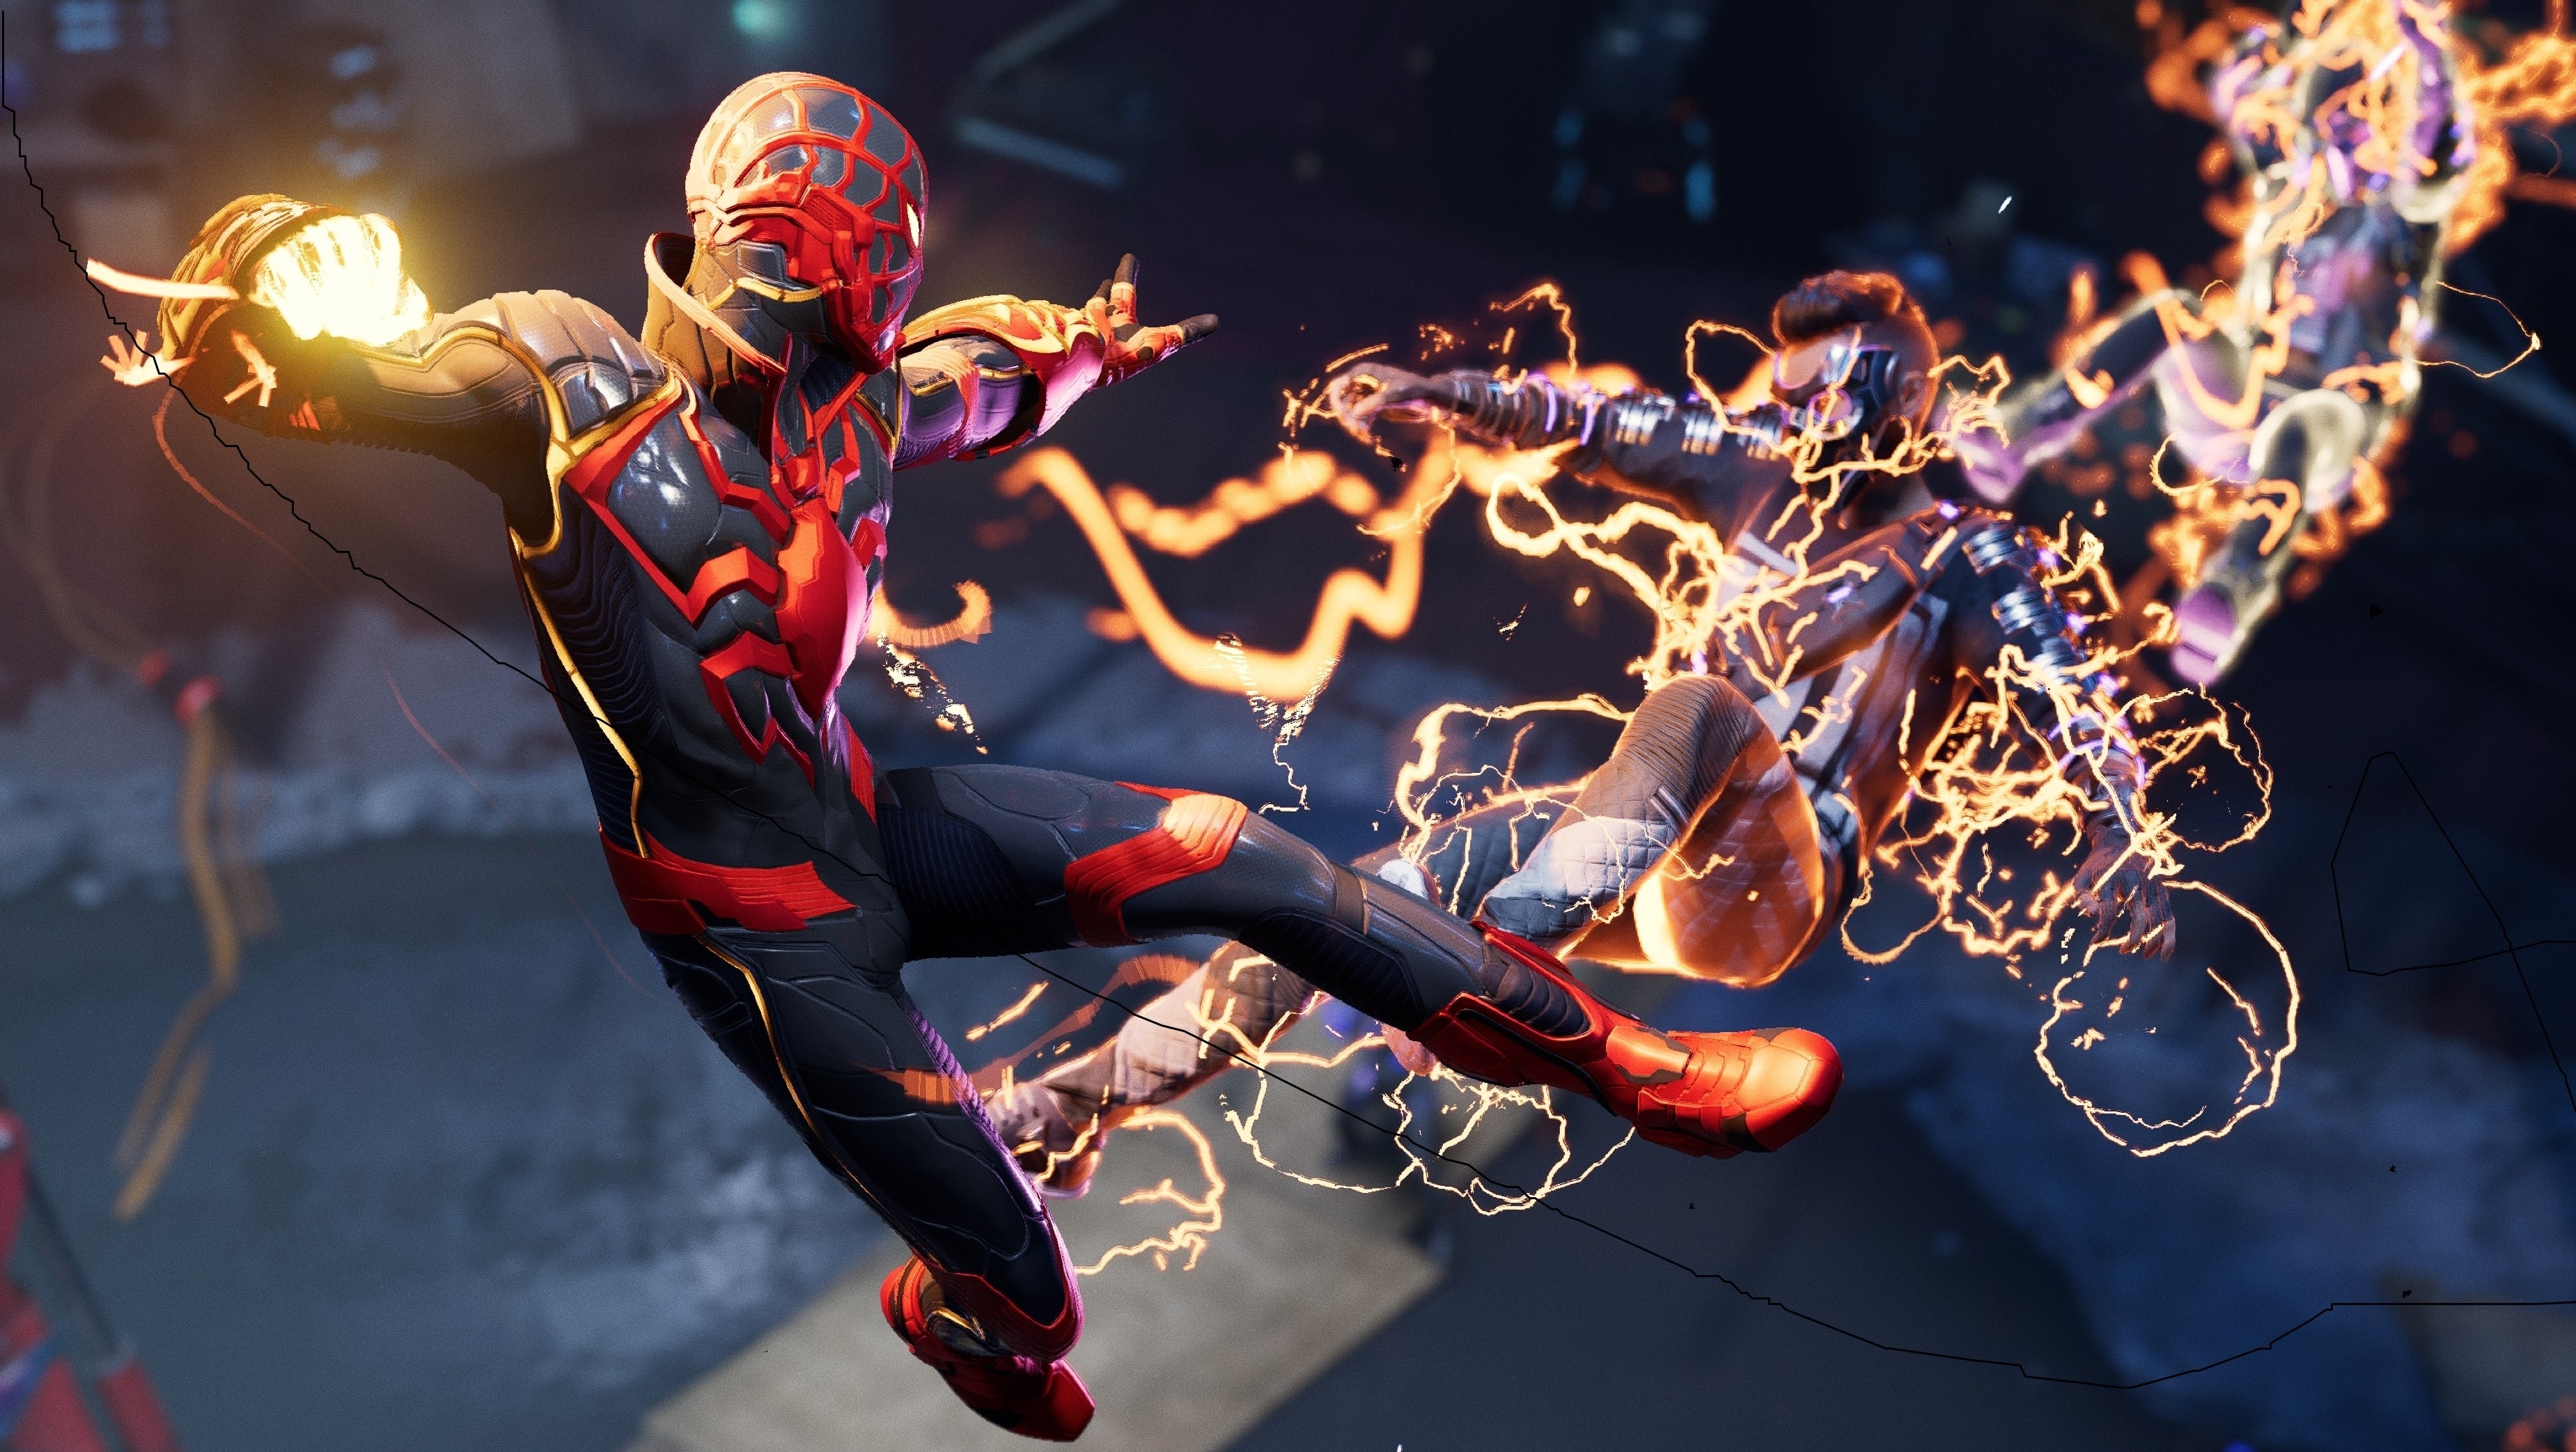 Bilder zu Spider-Man Miles Morales: Spoilerwarnung von Insomniac - lasst euch das Spiel nicht verderben!